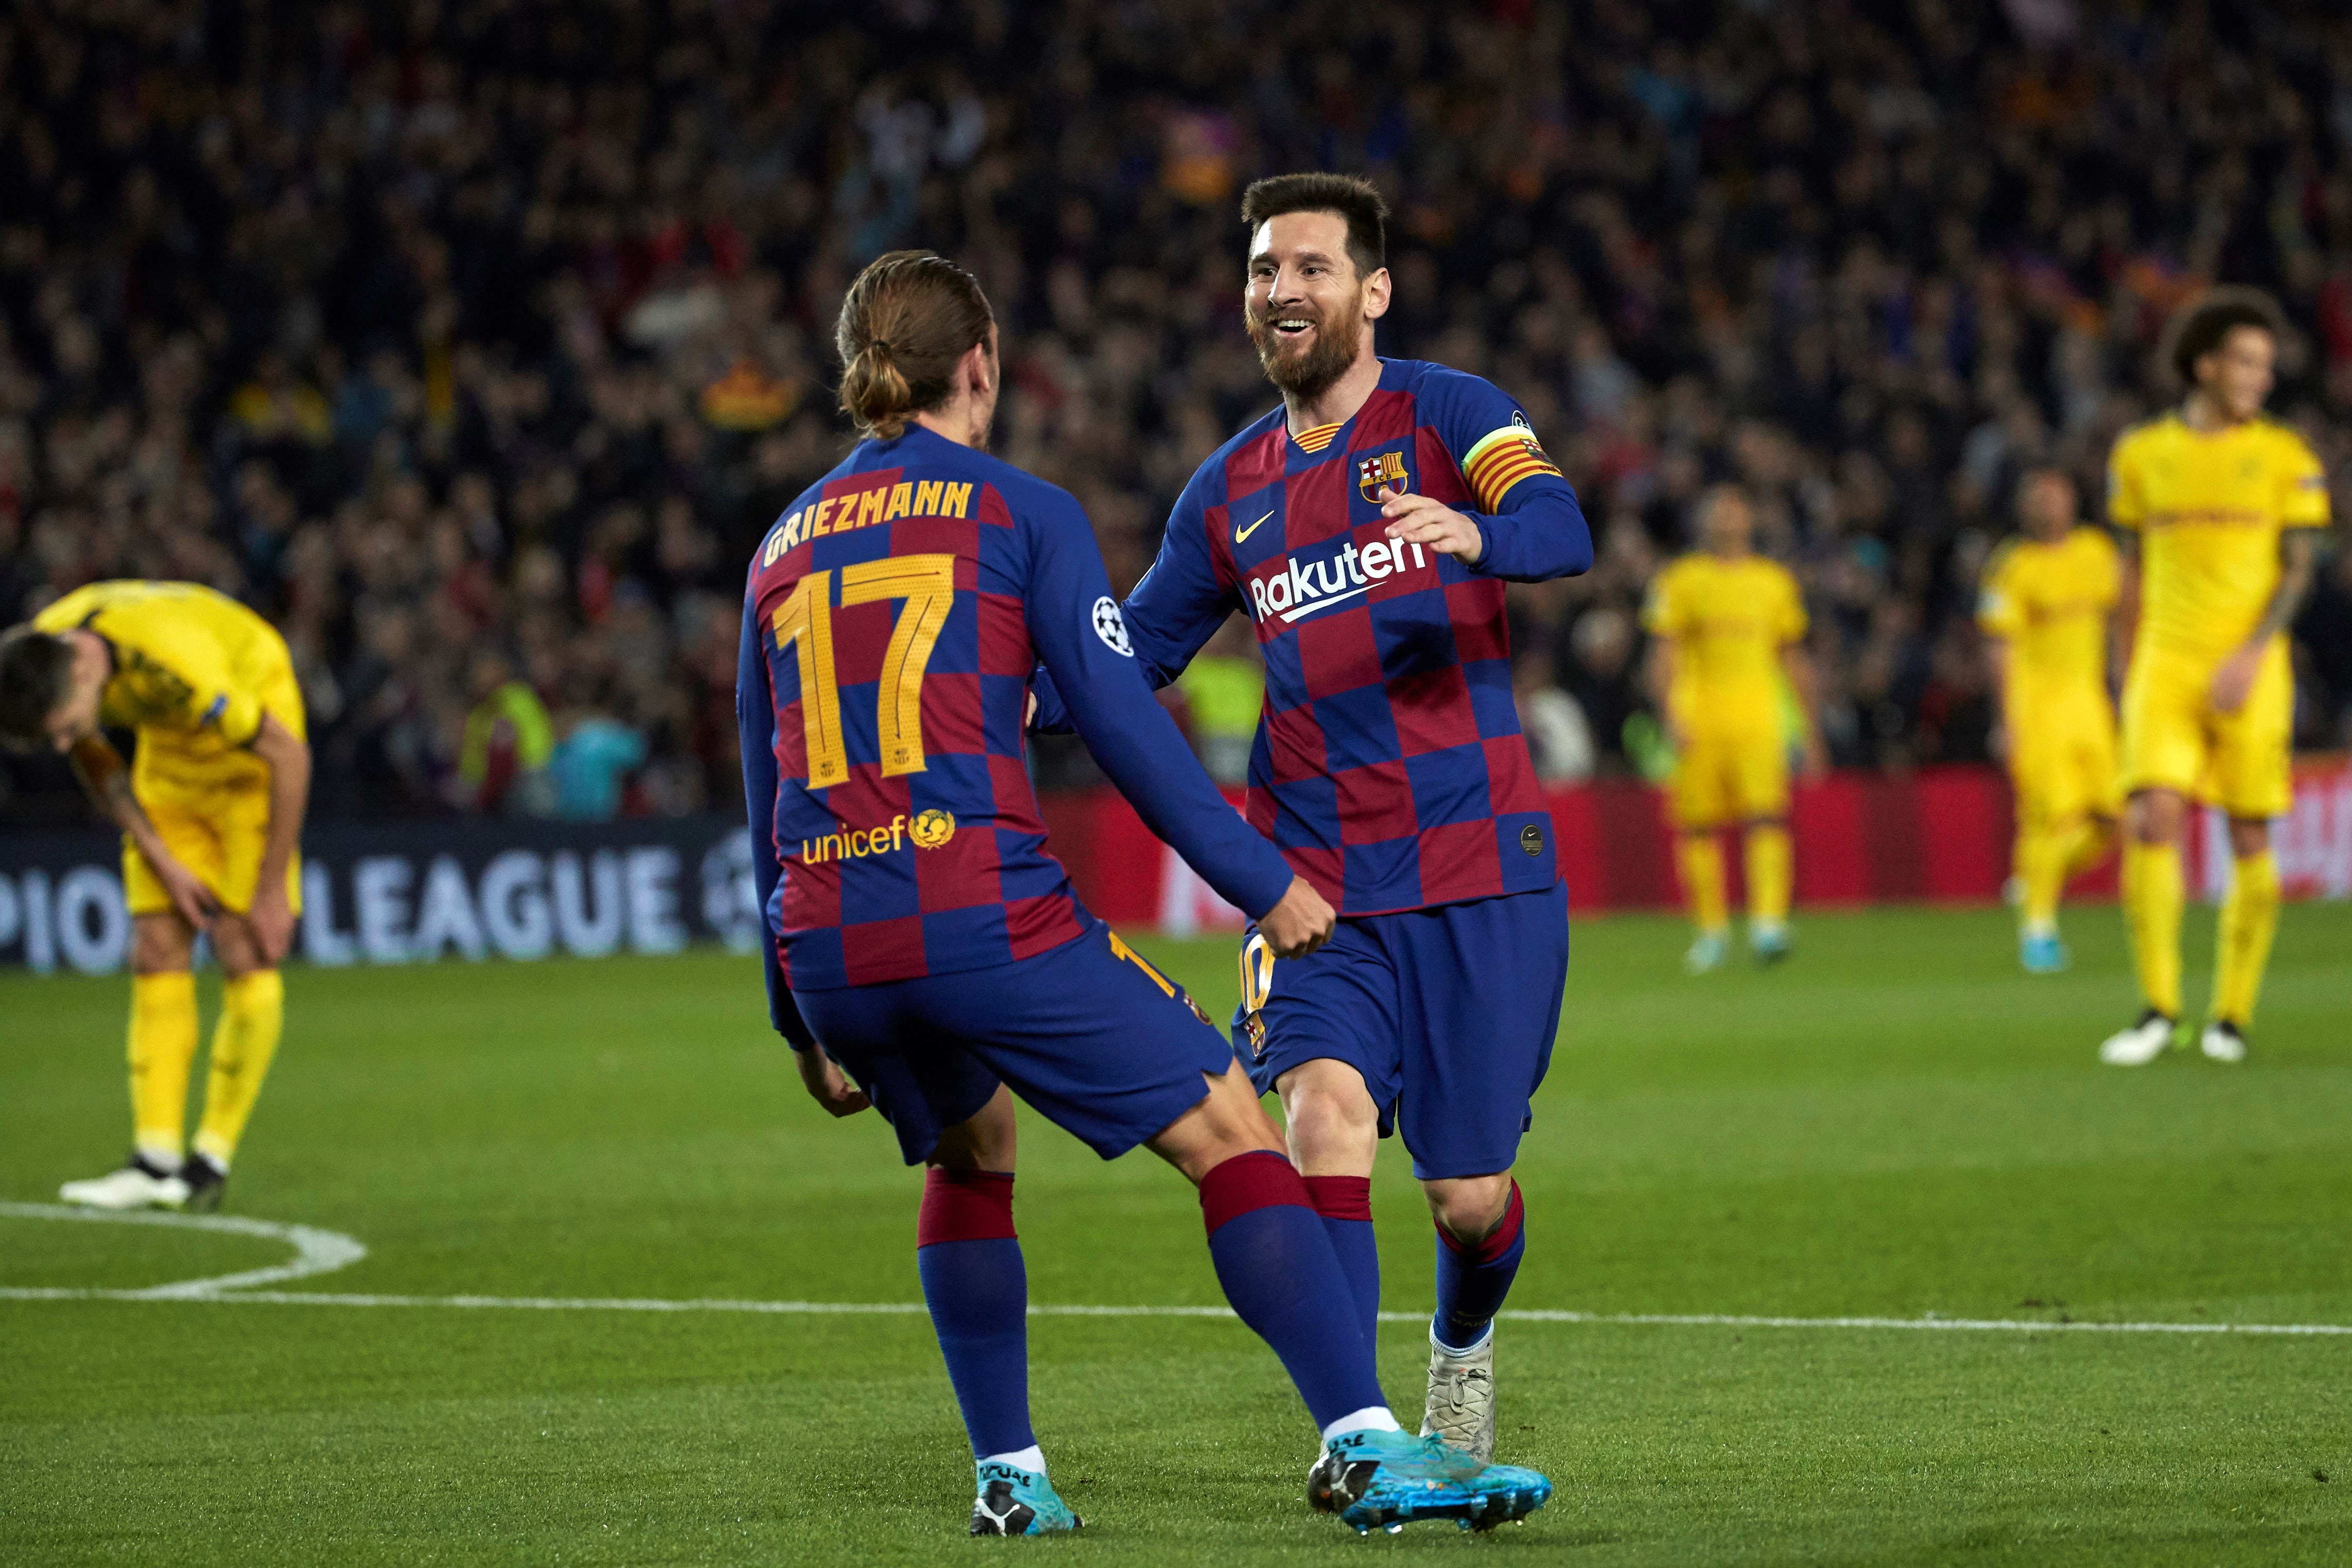 Messi clasifica al Barcelona, Liverpool aplaza su pase y Leipzig sella boleto a octavos de Champions